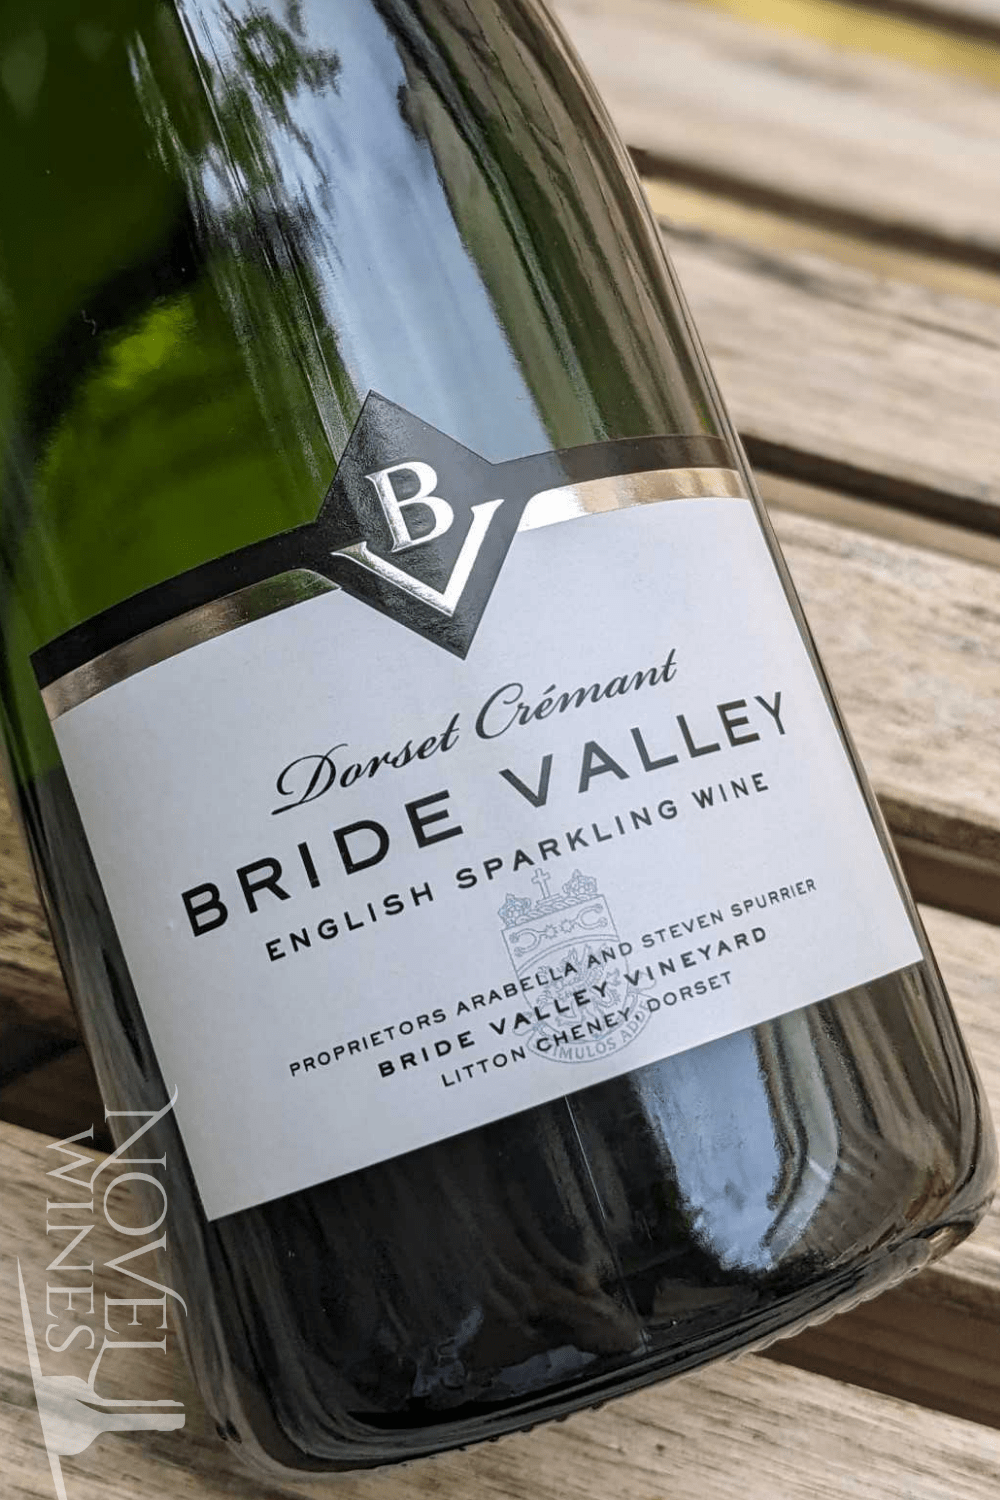 Bride Valley Vineyard Sparkling Wine Bride Valley Vineyard Dorset Crémant NV, England